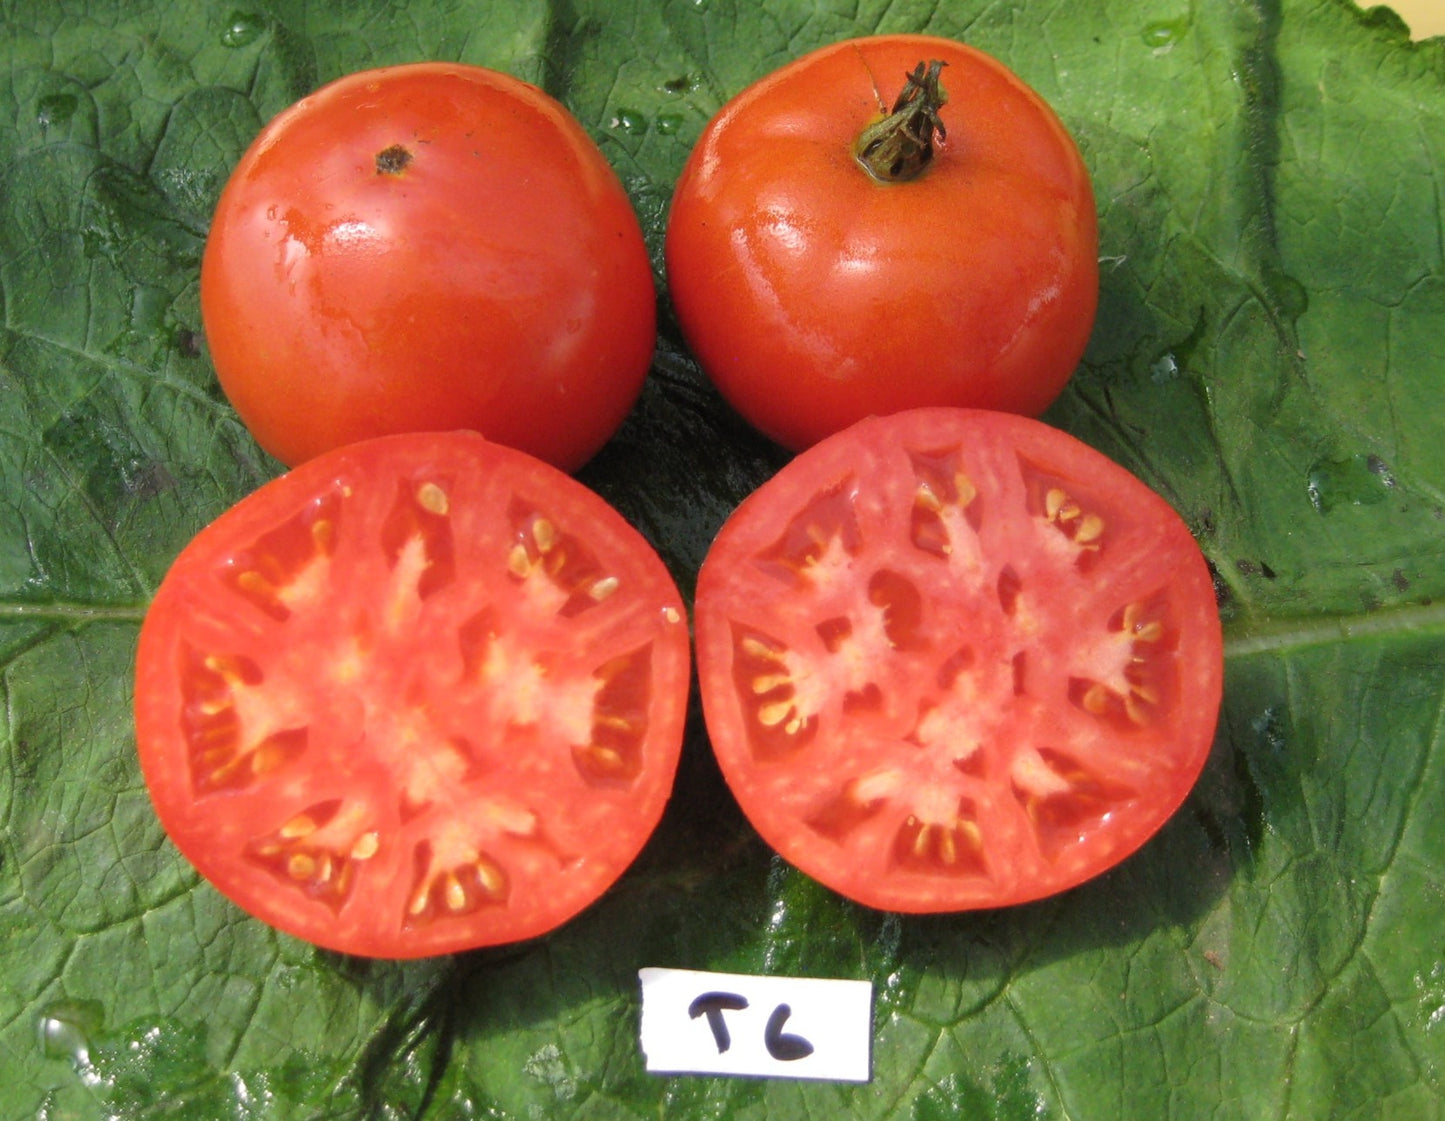 Oregon Spring Tomato